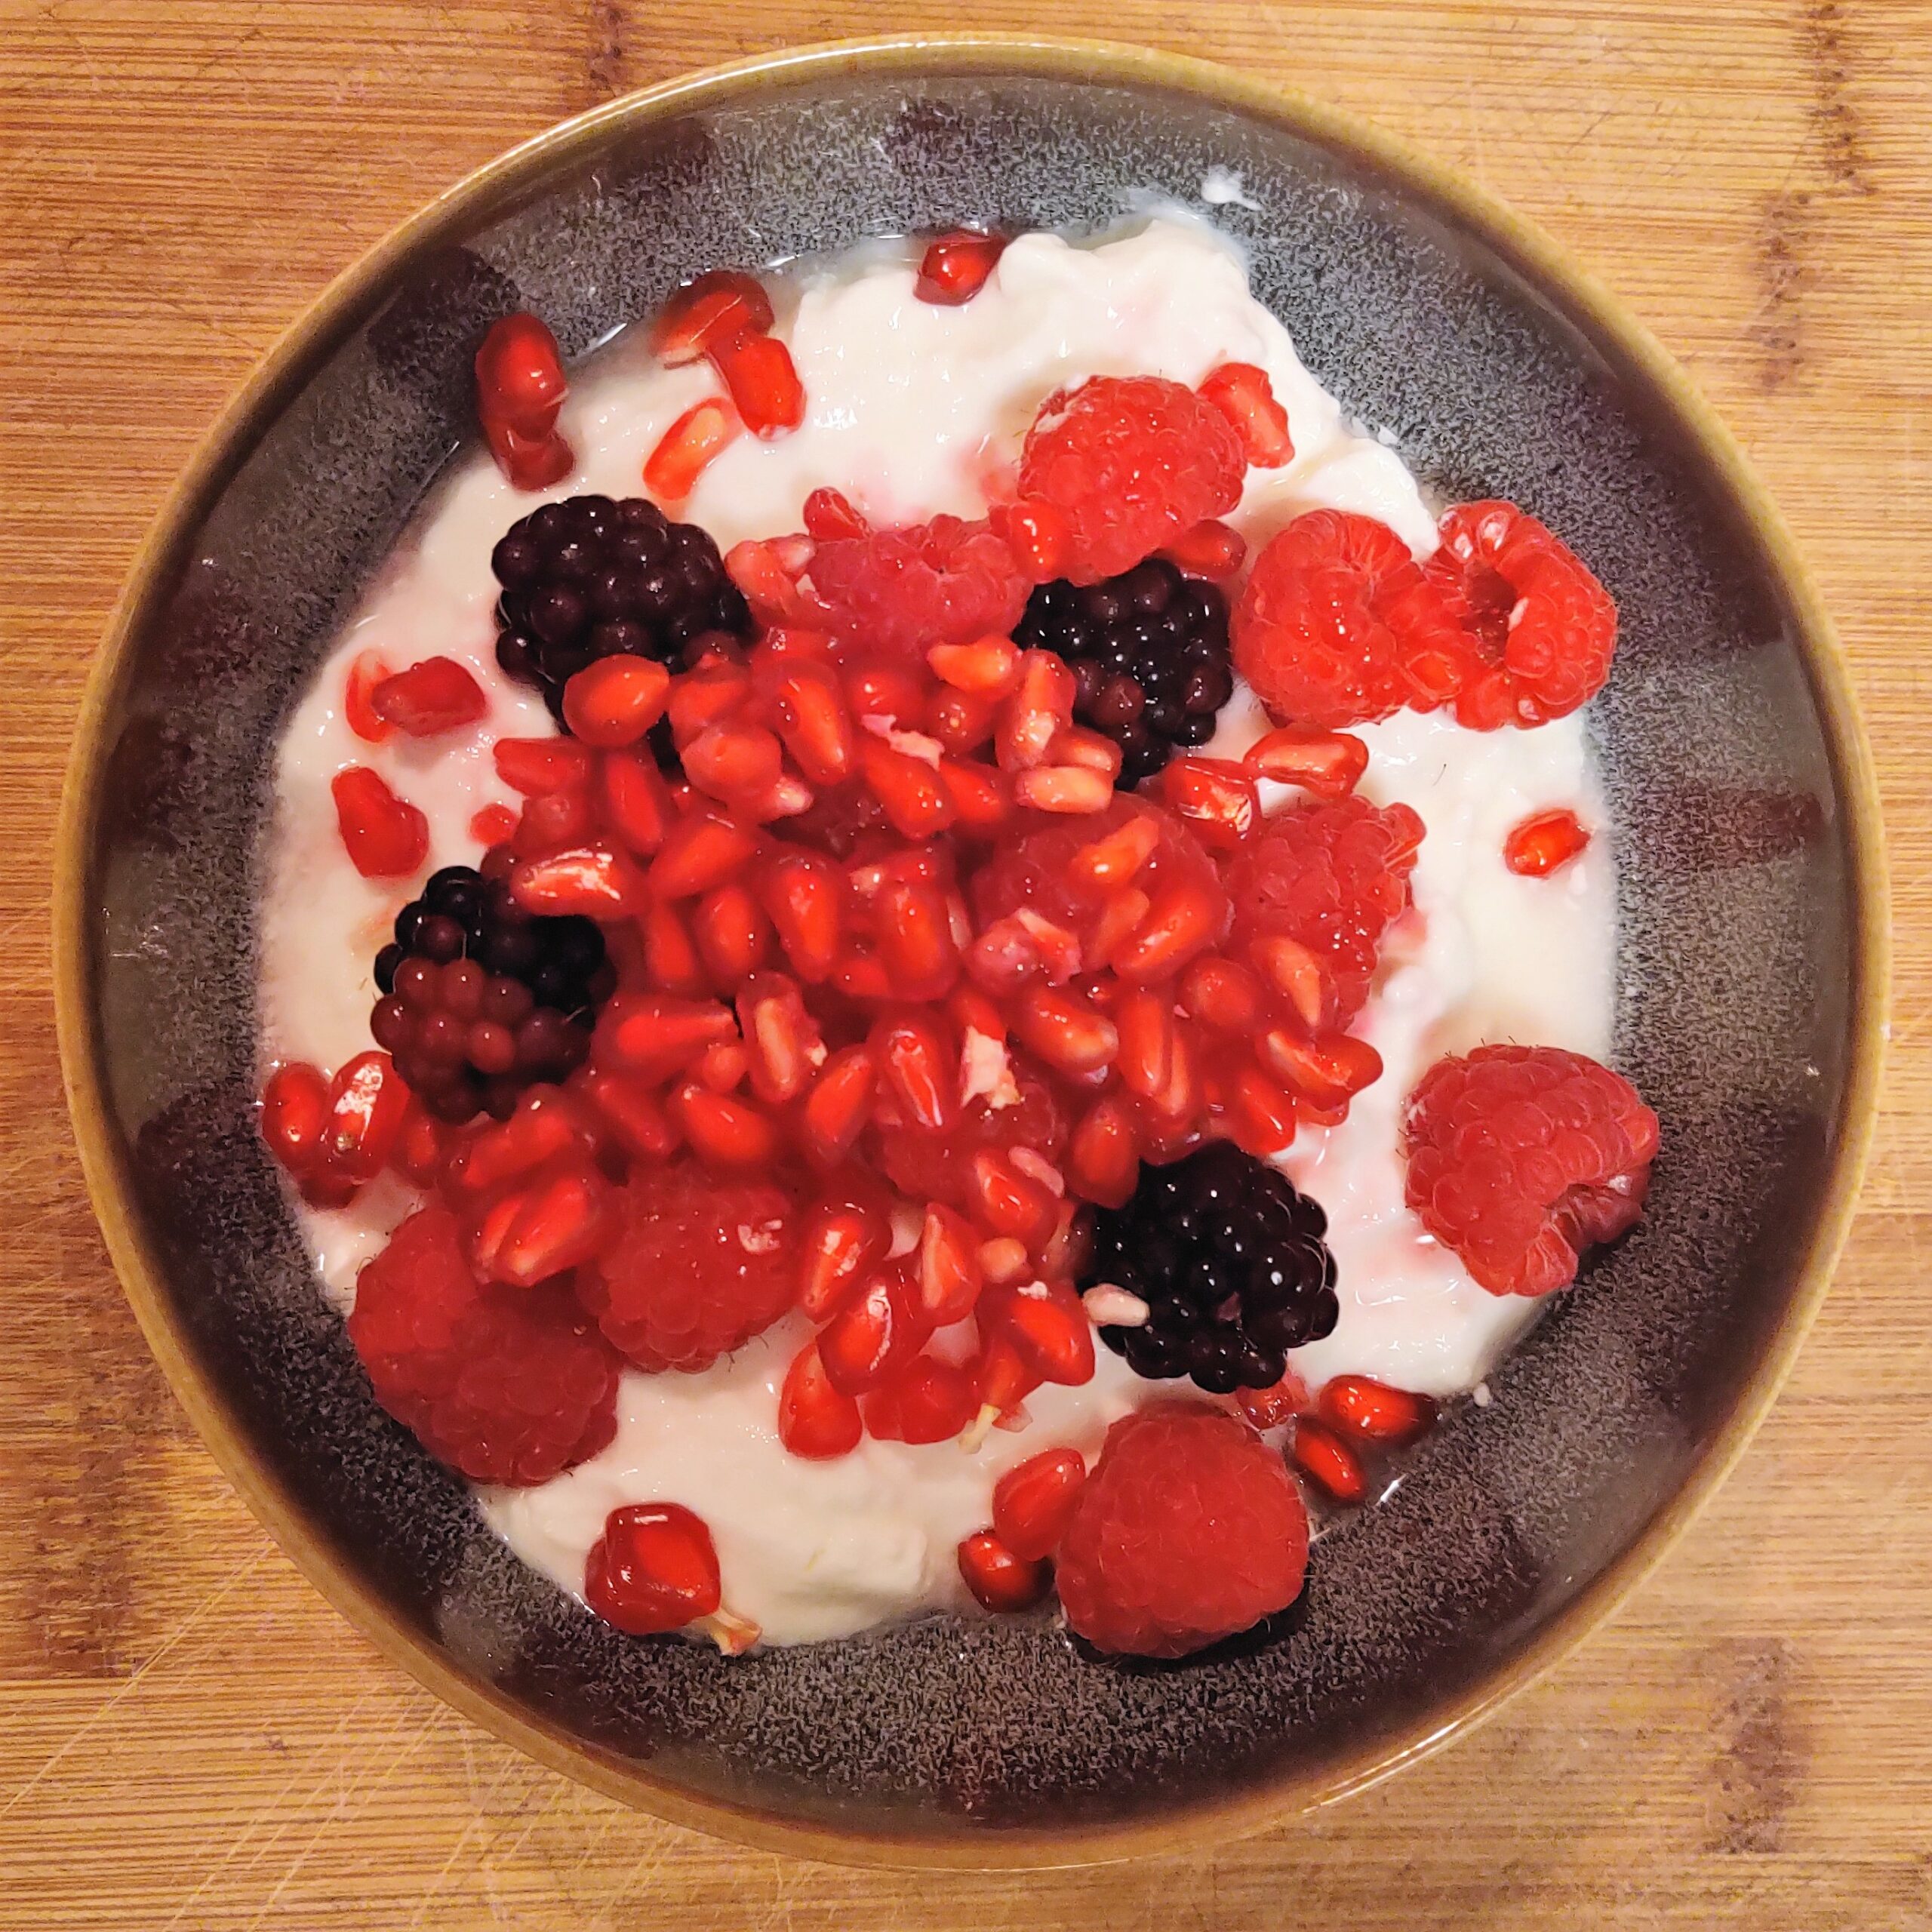 Mein Frühstück: Joghurt mit Granatapfel und Beeren - das BlogMagazin